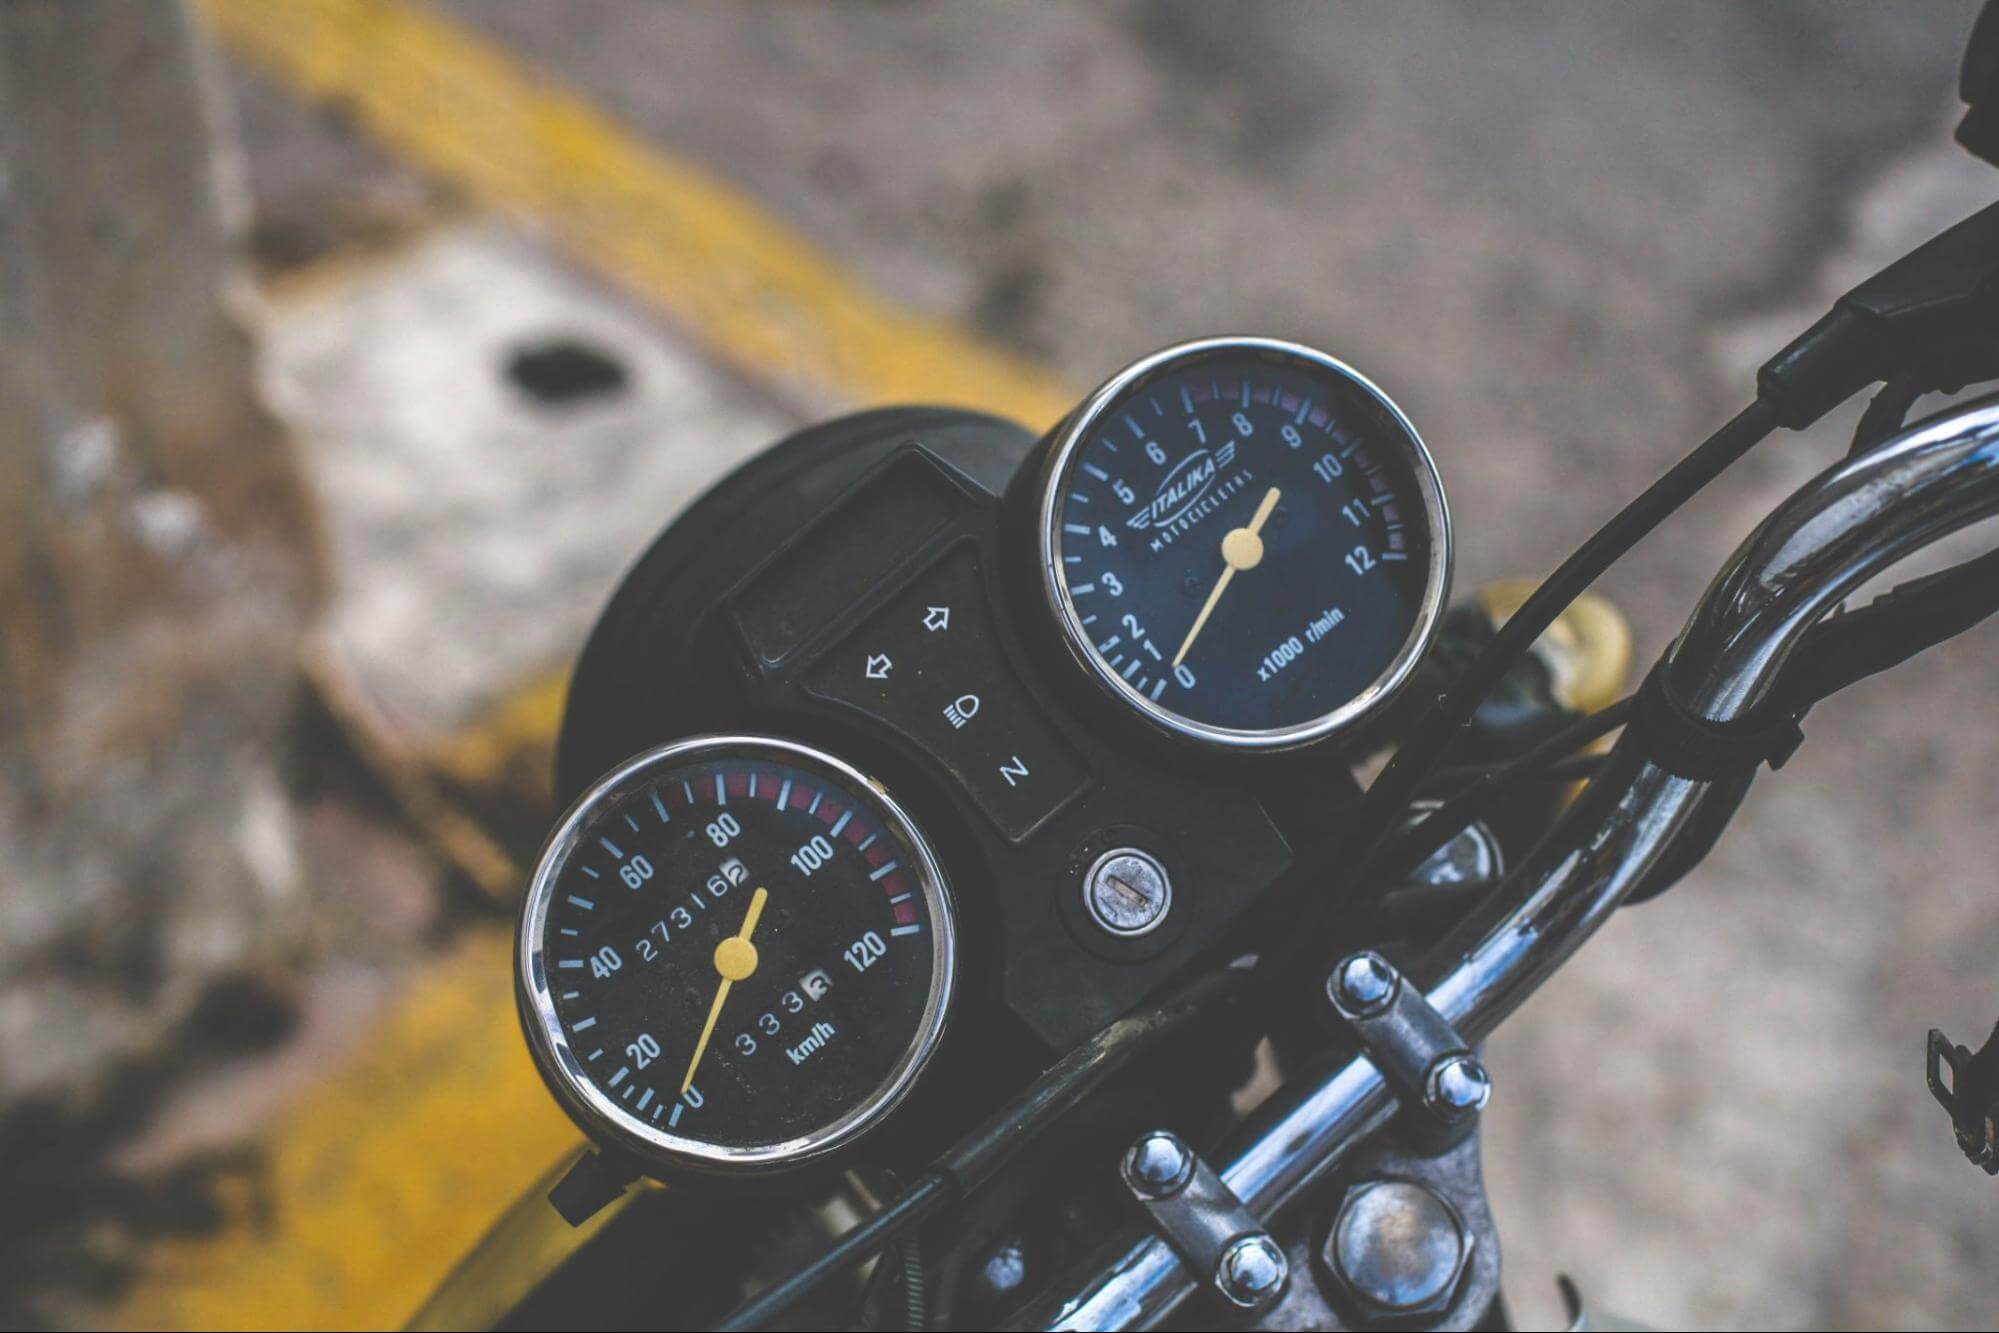 o hodômetro e o velocímetro de uma motoestão em foco. Essa moto está parada em um estacionamento ao ar livre 